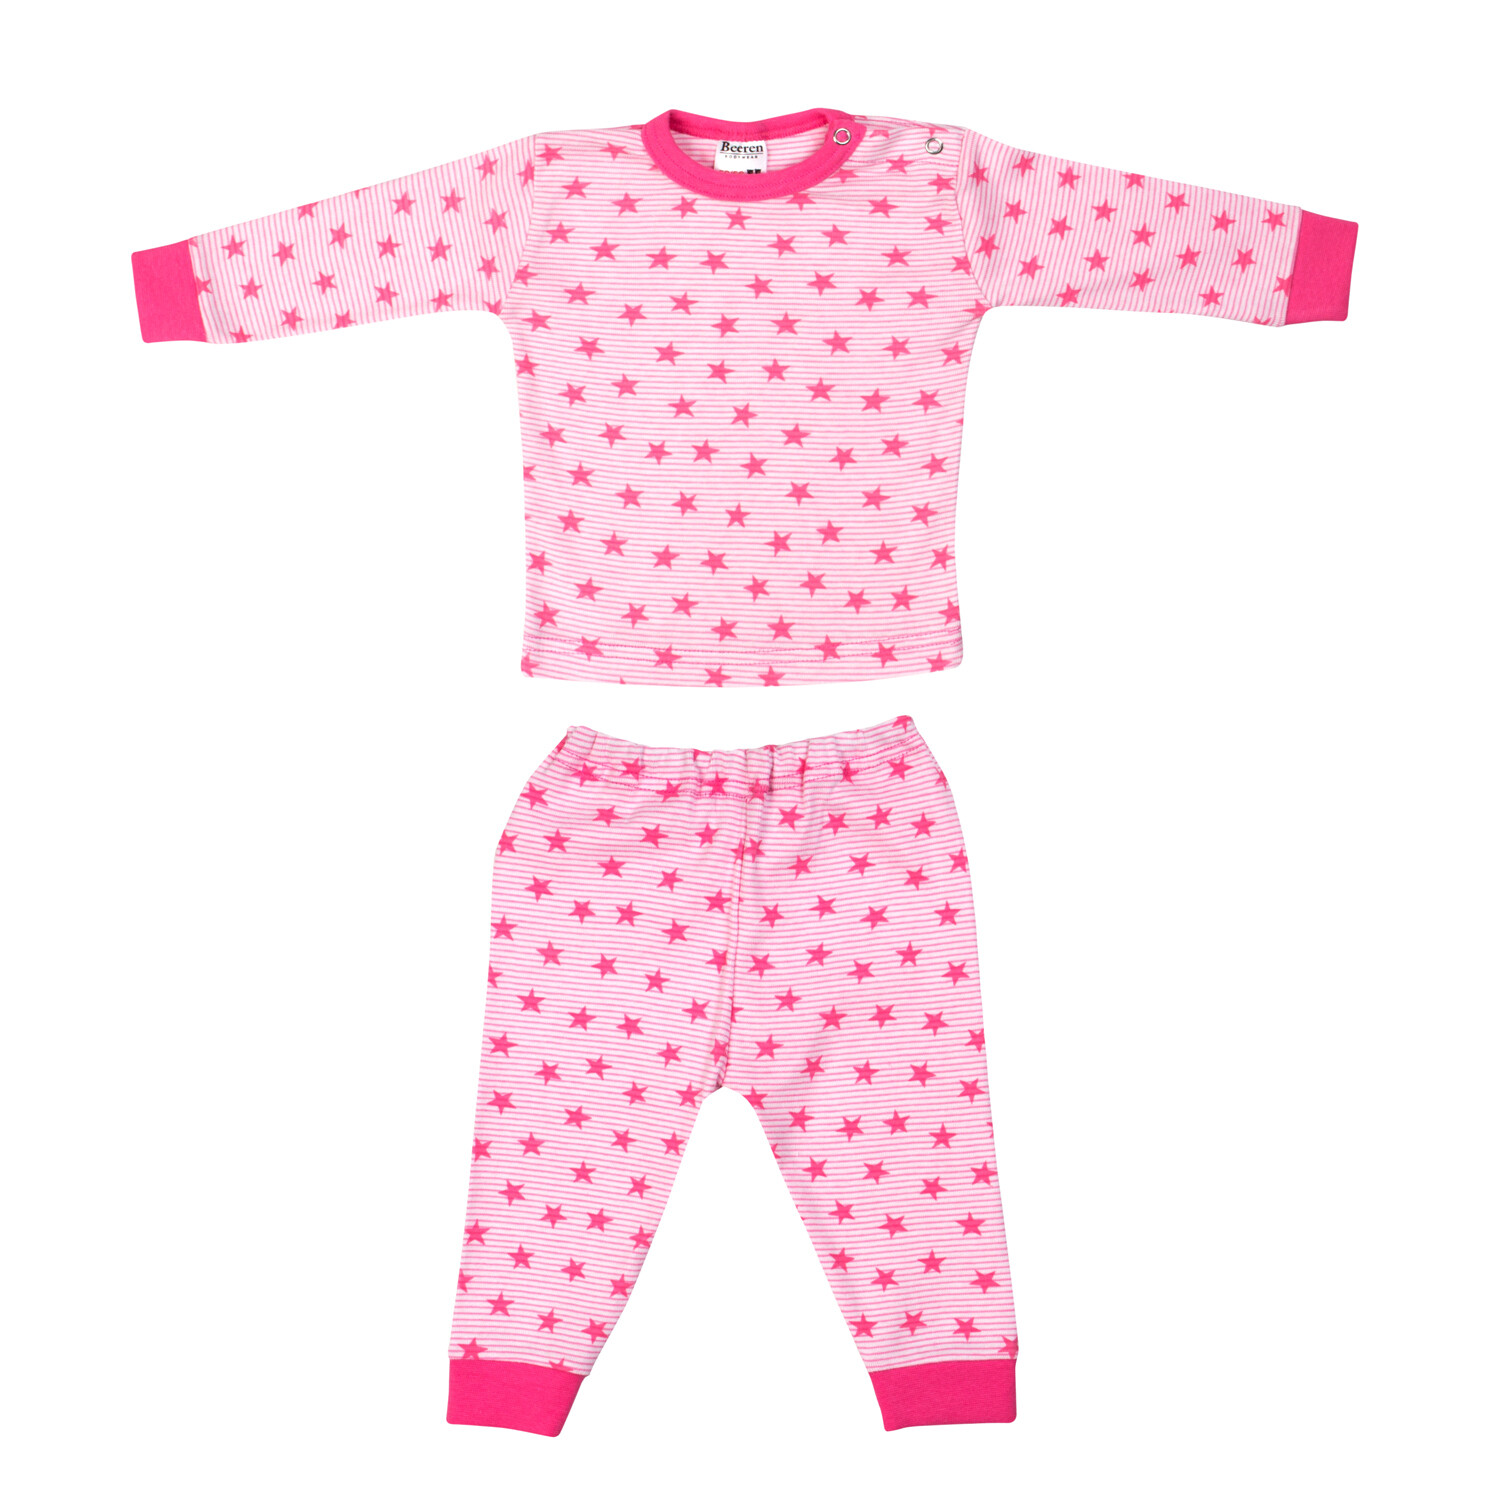 (24-018) Baby pyjama Stripe star rose 74/80